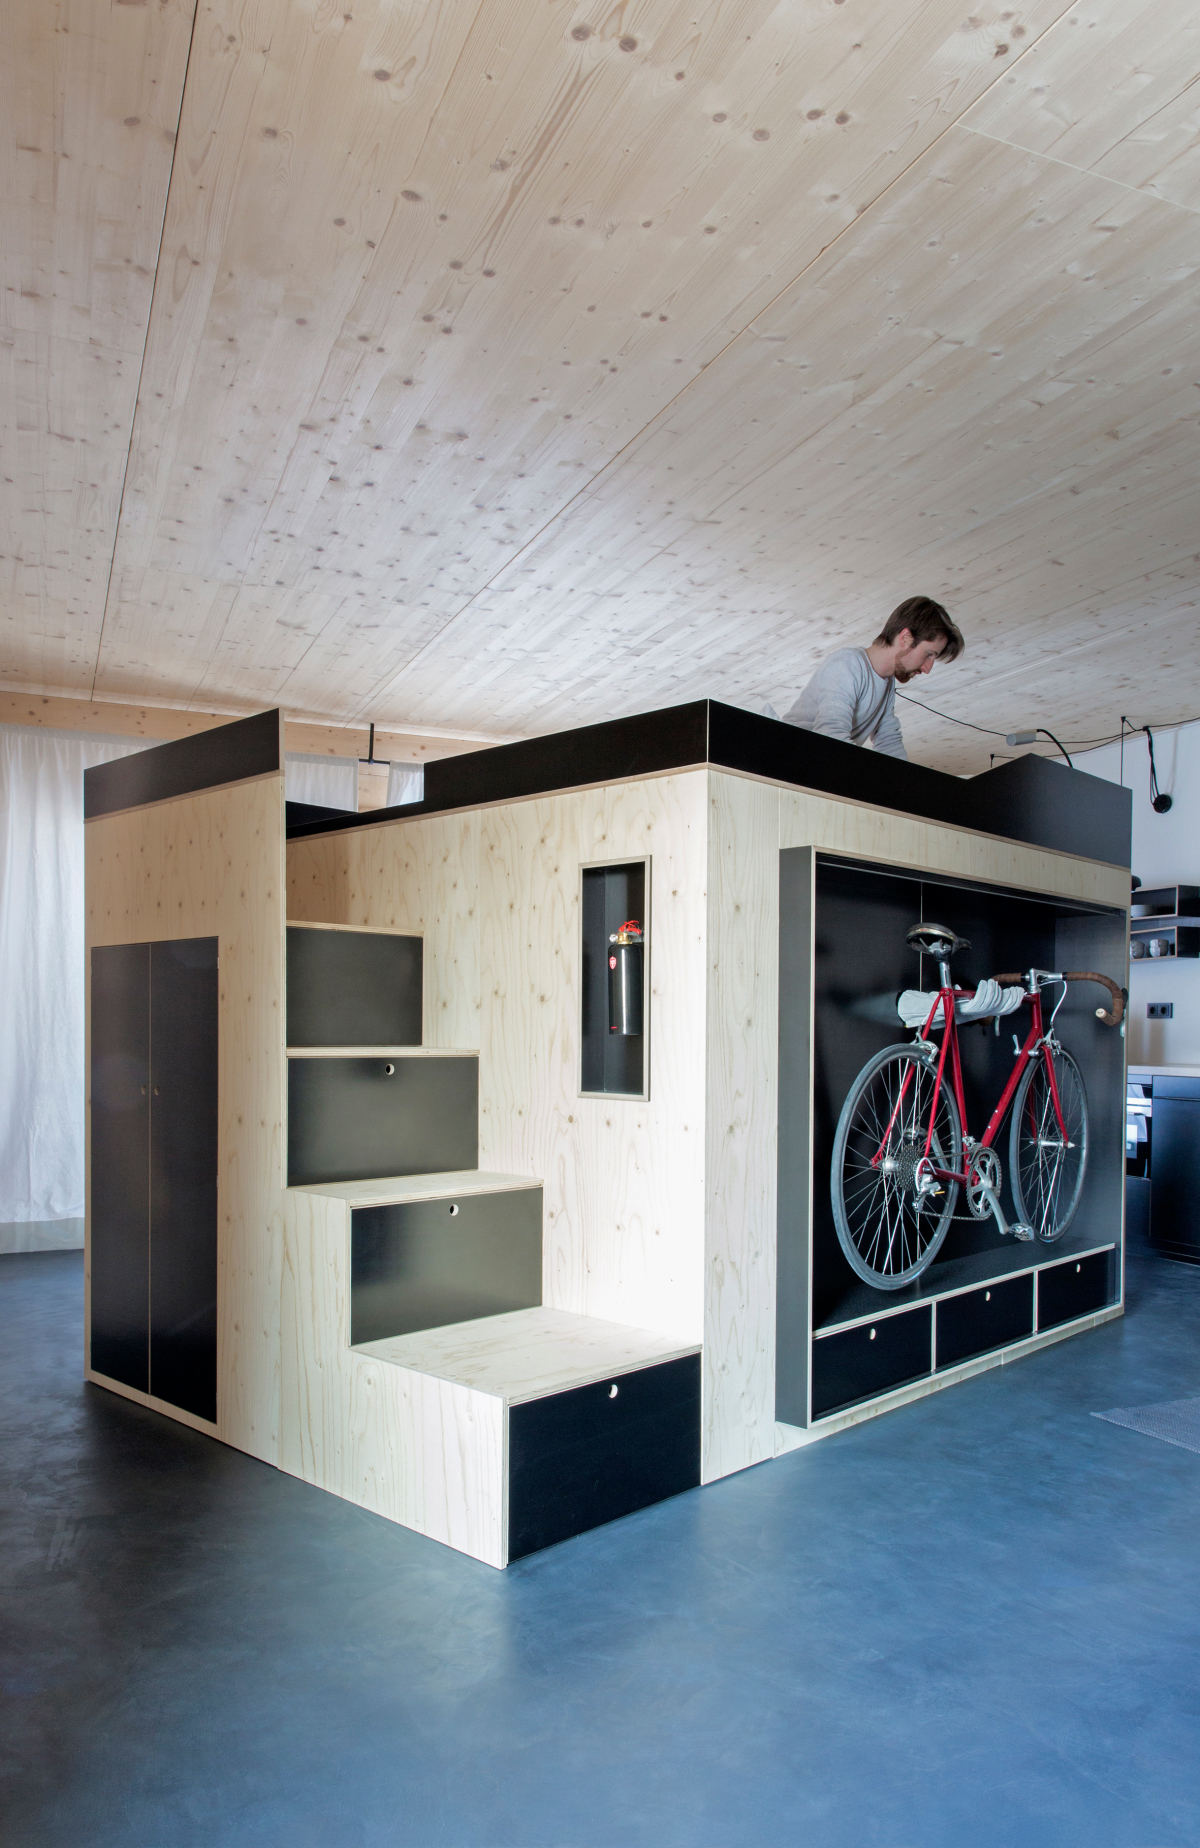 Für die oberbayerische Wohnungswirtschafts-Gesellschaft B&O Gruppe entwarf der Designer Nils Holger Moormann eine modular aufgebaute Box als Raum im Raum, über deren ?Schubladentreppe? man zum Schlafplatz in 2 m Höhe gelangt Fotos: Julia Rotter